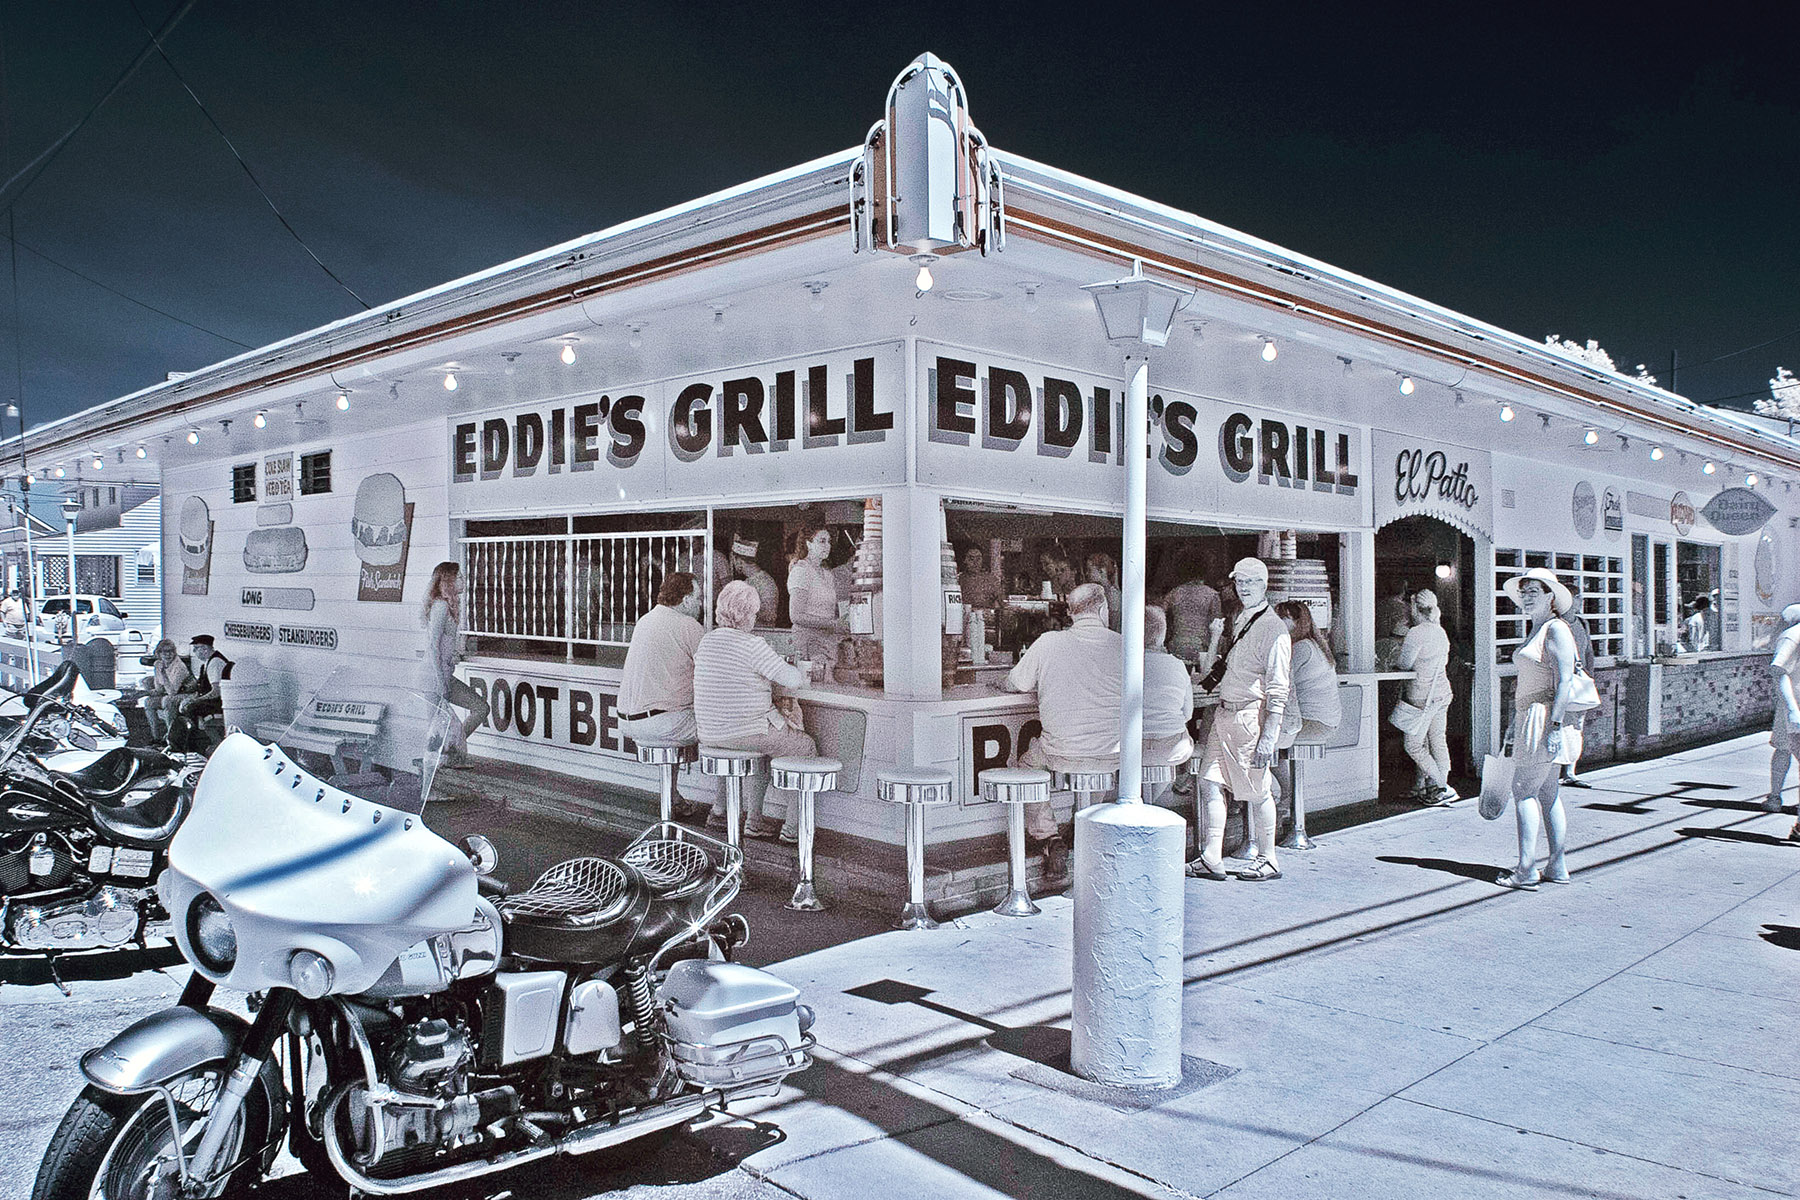 Eddie's Grill 4401 Med a4a58c11 4b42 4926 b466 4118ad08c87c